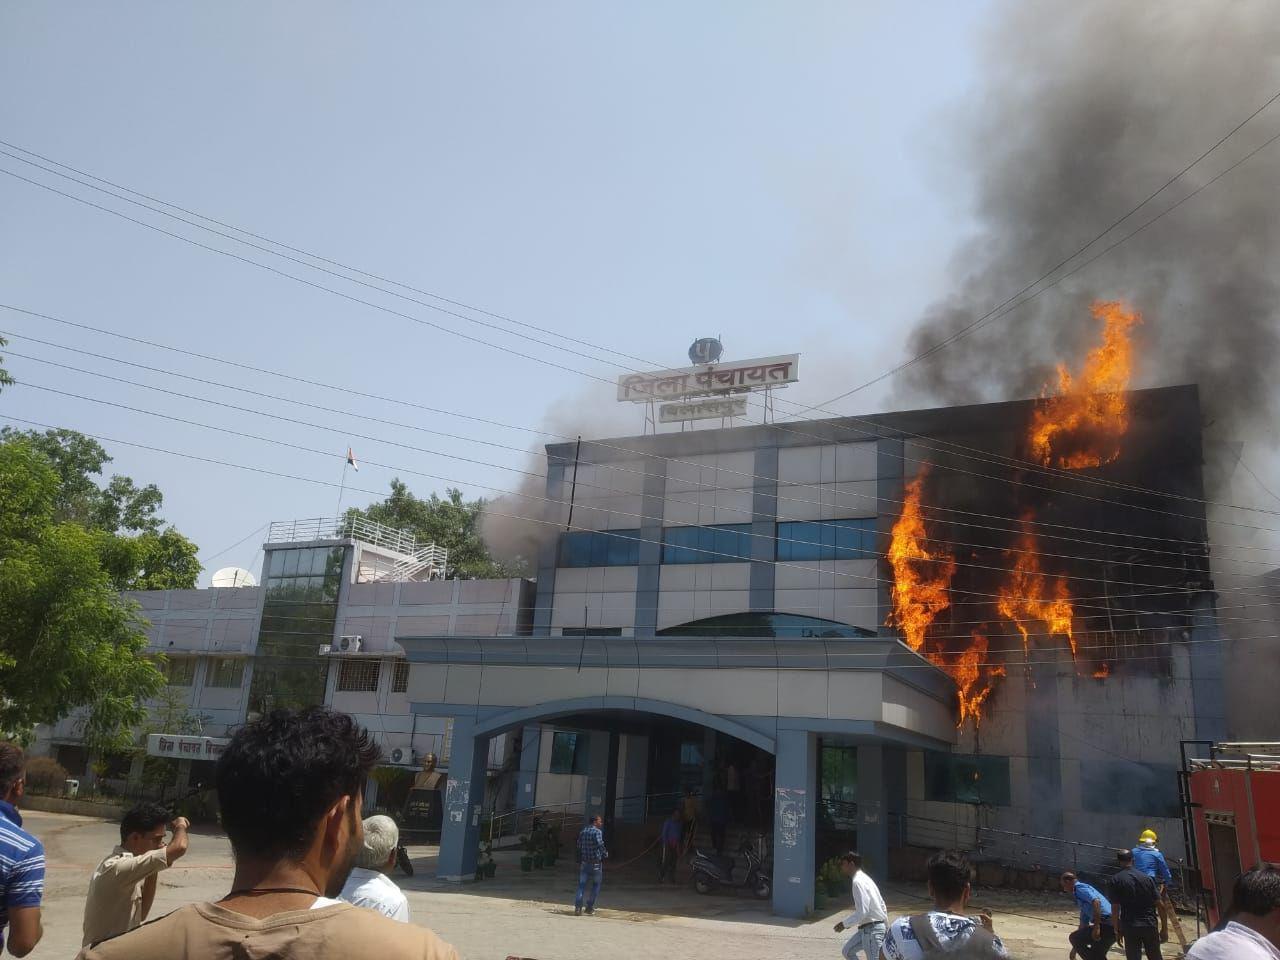 The Burning Building in Bilaspur Chhattisgarh